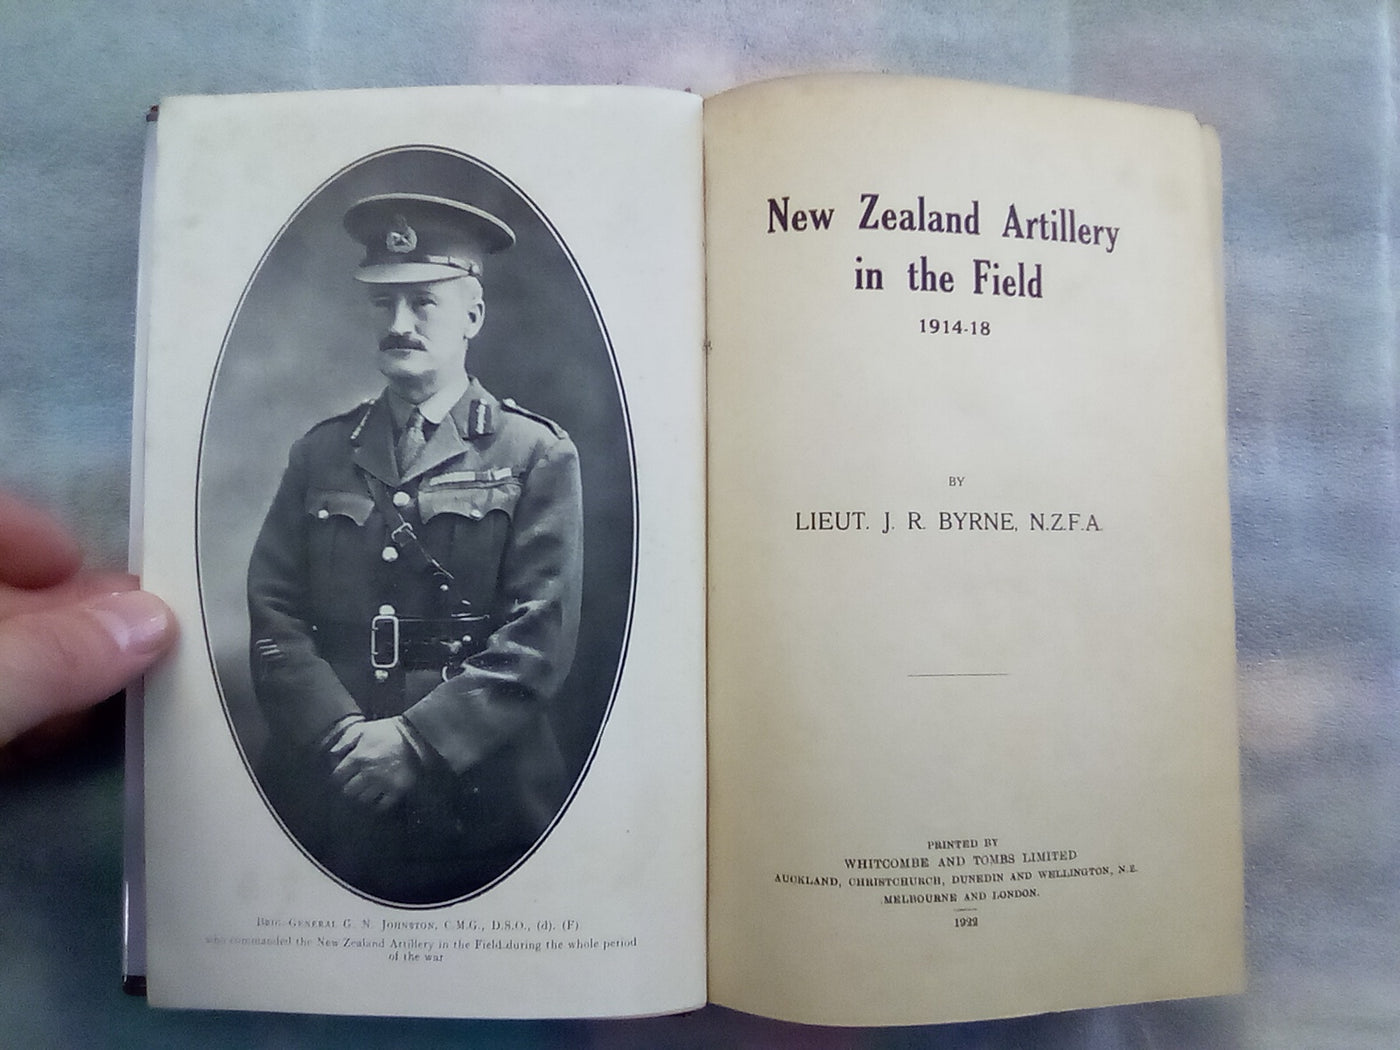 New Zealand Artillery in the Field 1914-18 by Lieut. J.R. Byrne